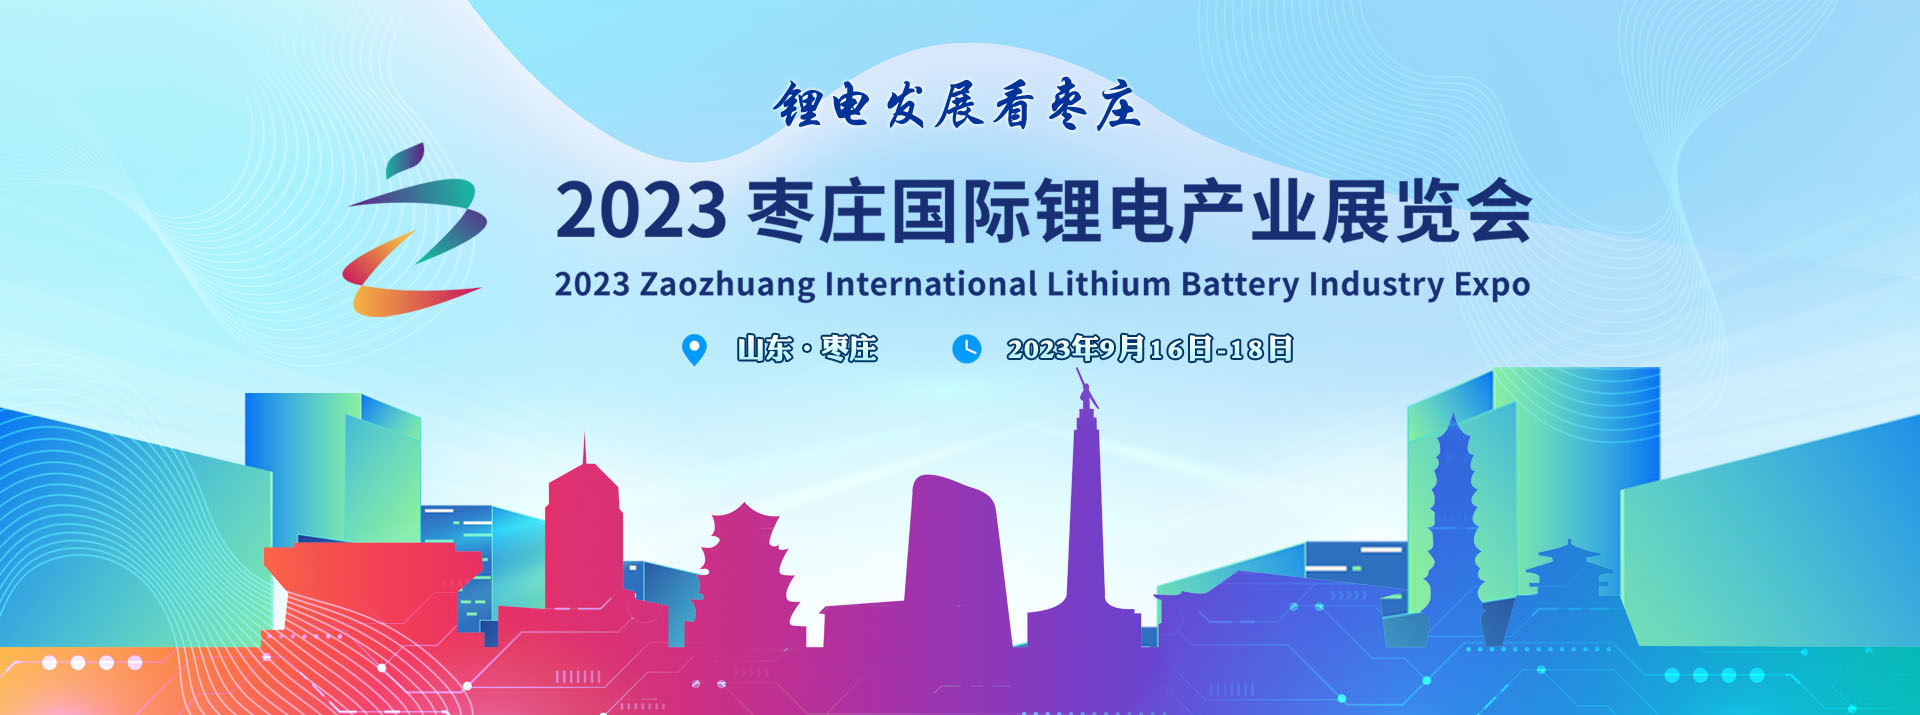 聚焦2023枣庄国际锂电产业展览会